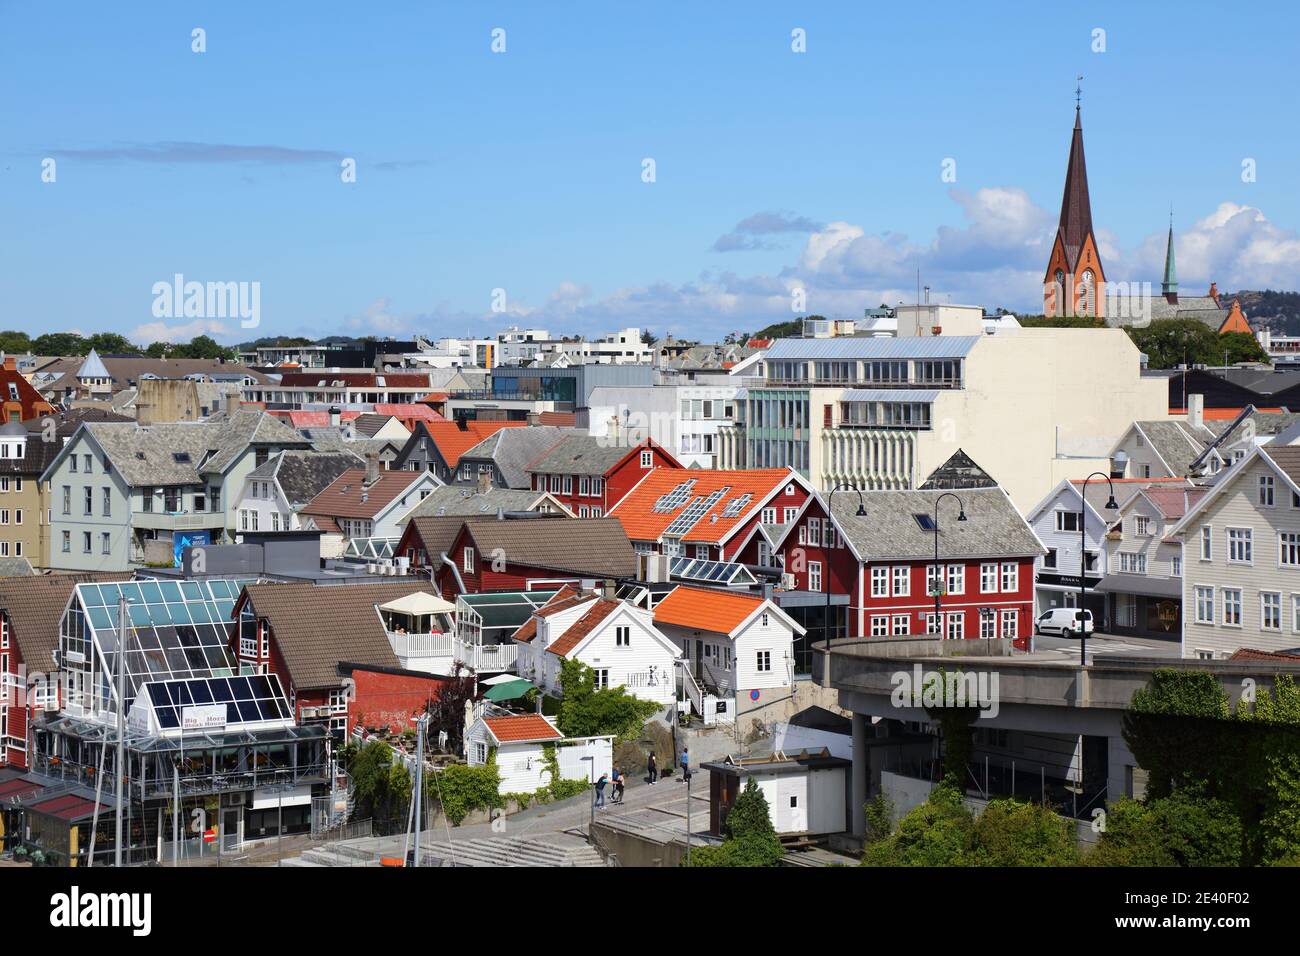 HAUGESUND, NORWAY - JULY 22, 2020: Urban skyline of Haugesund city in Norway. Haugesund is a town in Rogaland region established in 1855. Stock Photo